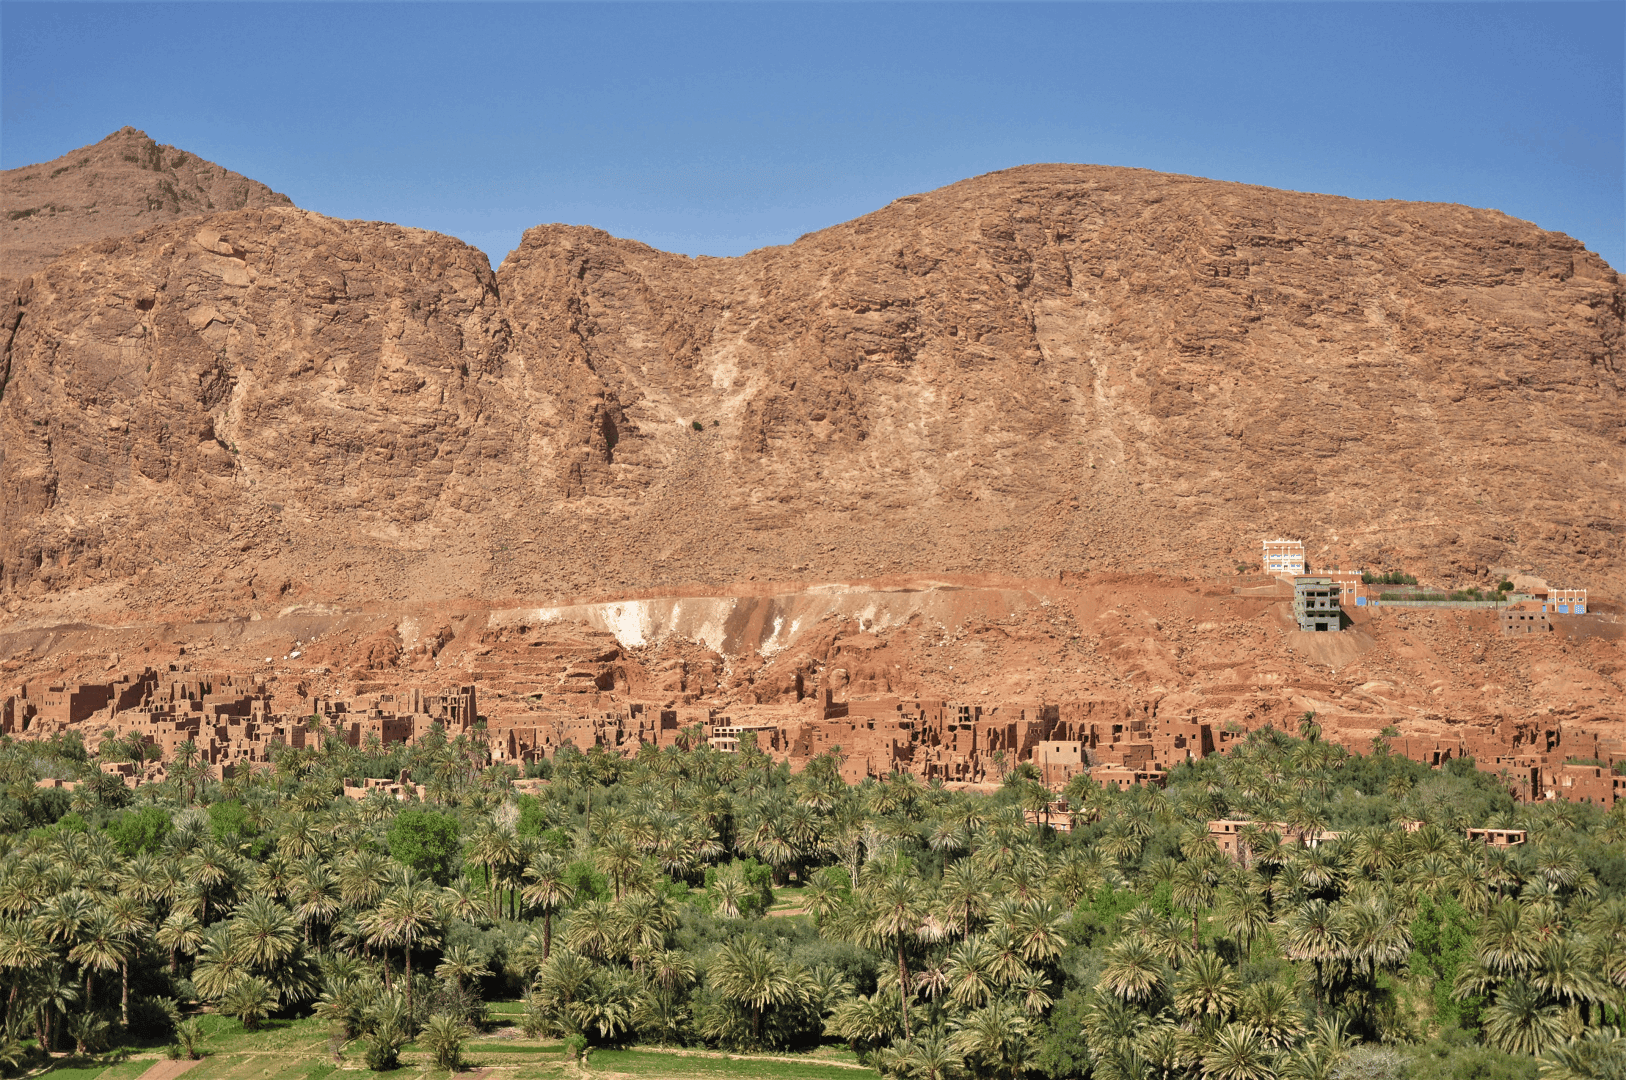 Desierto del Sáhara (Erg Chebbi) – Gargantas del Dadès